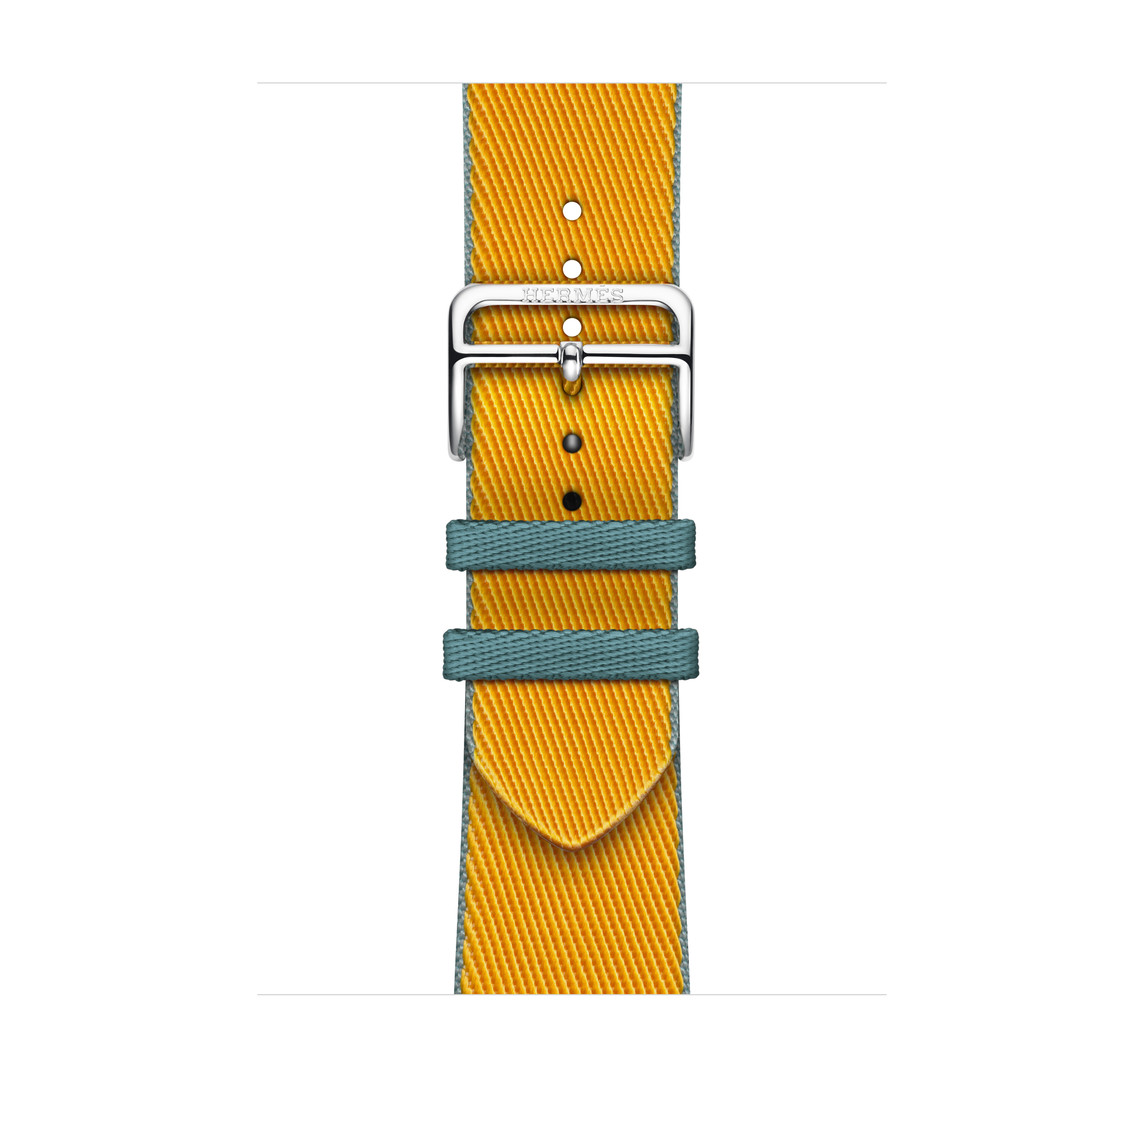 Bracelet Simple Tour Twill Jump Jaune d’Or/Bleu Jean (jaune), en matériau tissé avec boucle en acier inoxydable argent.